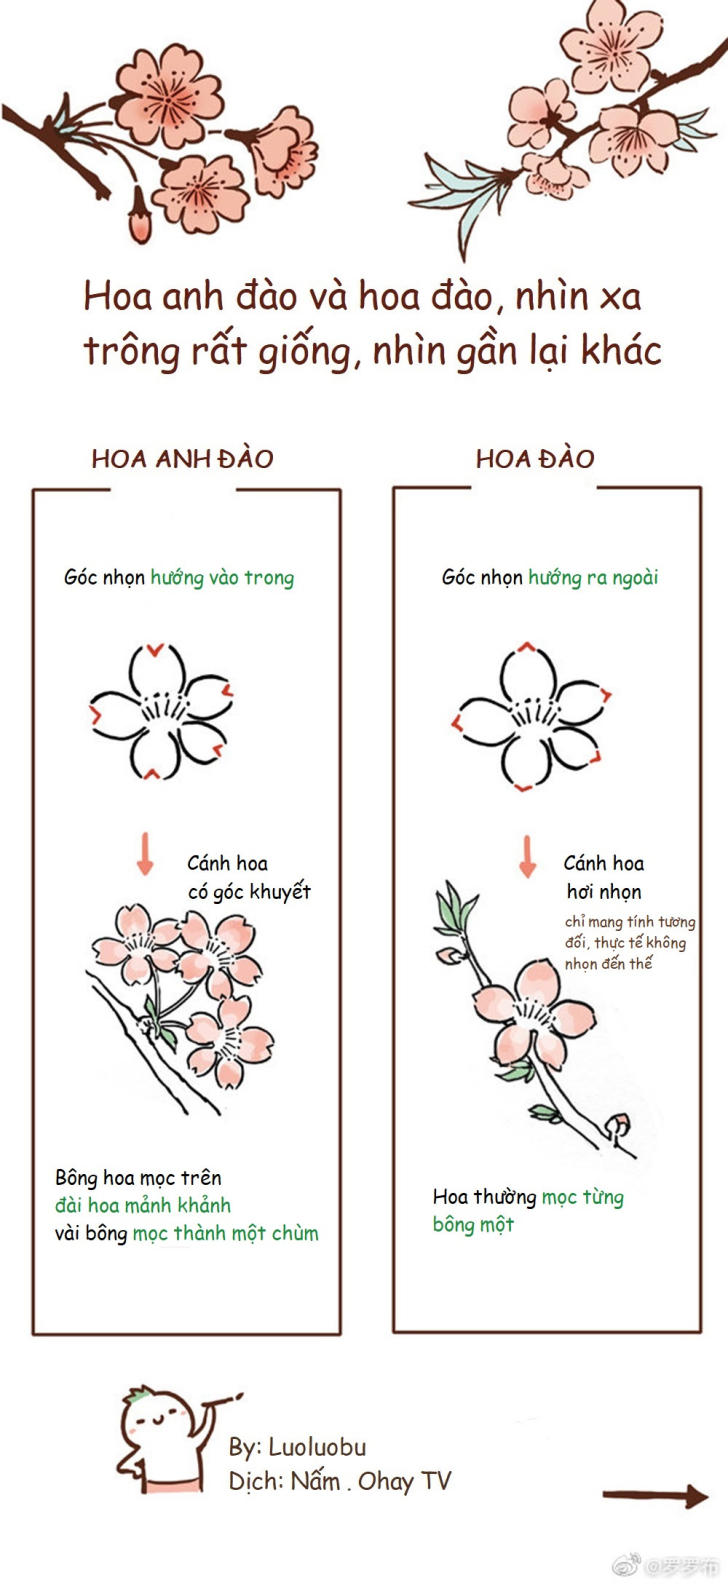 Hướng dẫn cách vẽ cây hoa anh đào đơn giản với 7 bước cơ bản